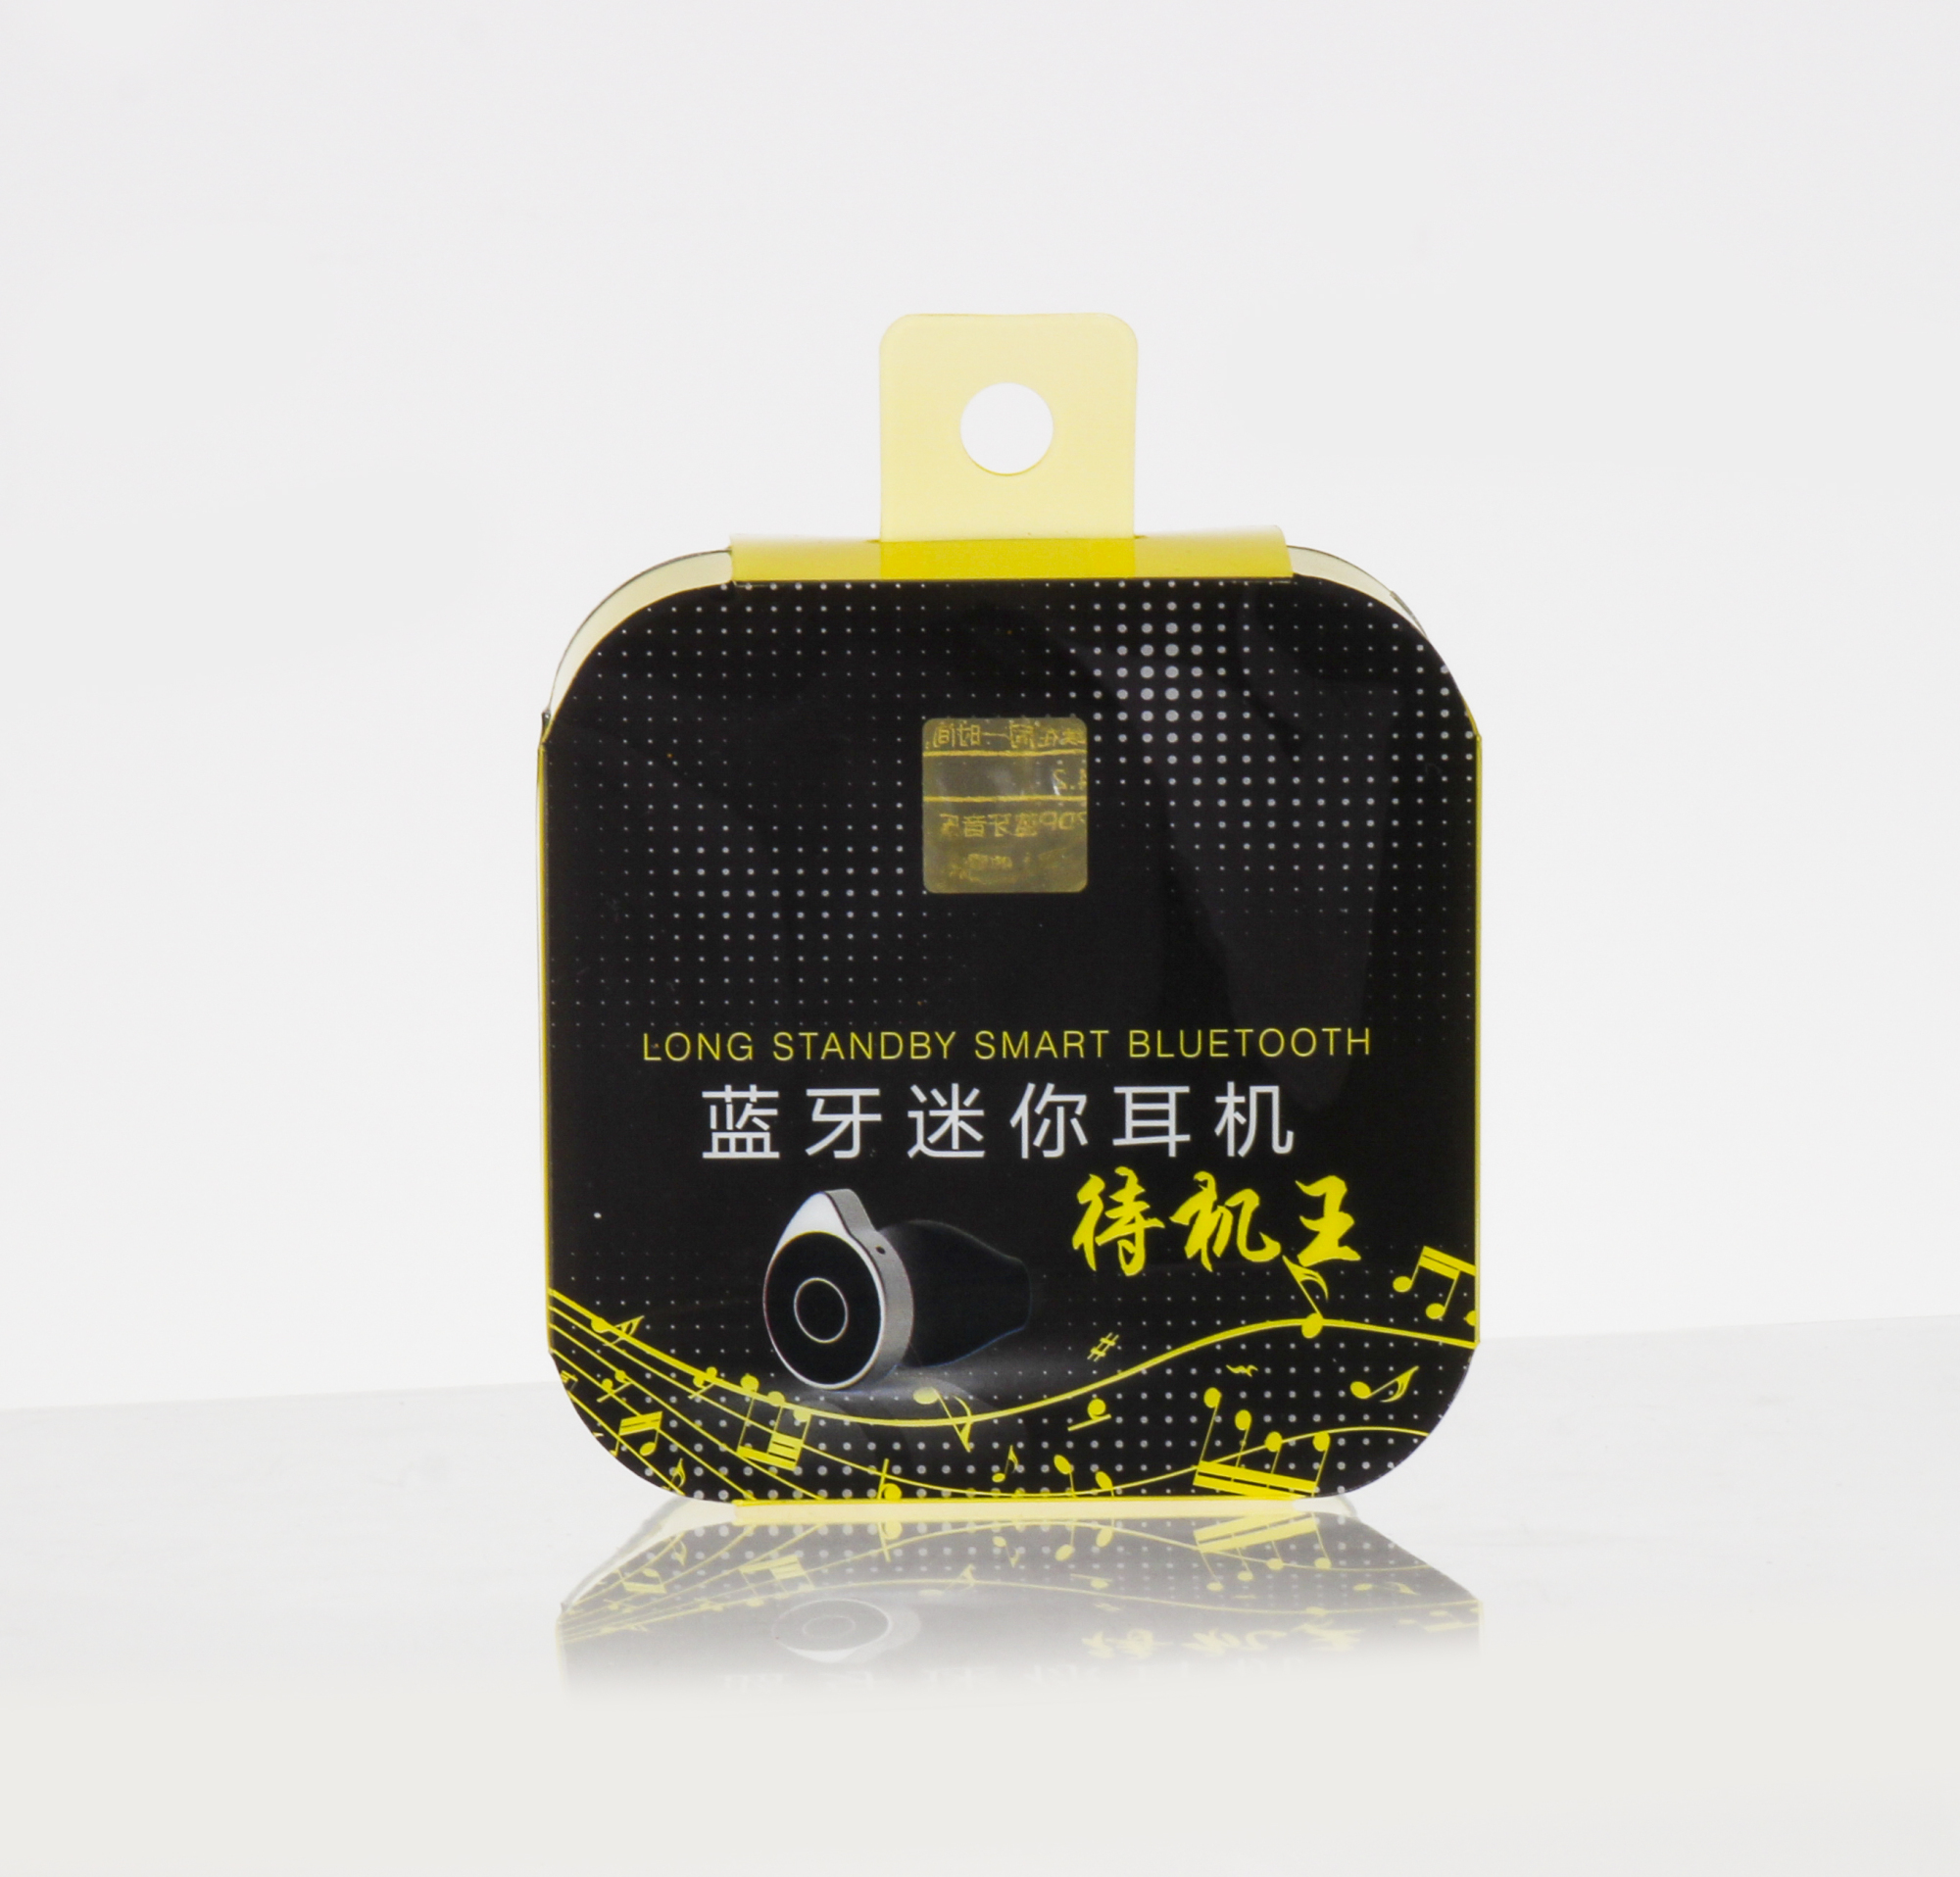  Shenzhen Xin Hong Yang Packaging Products Co. 9